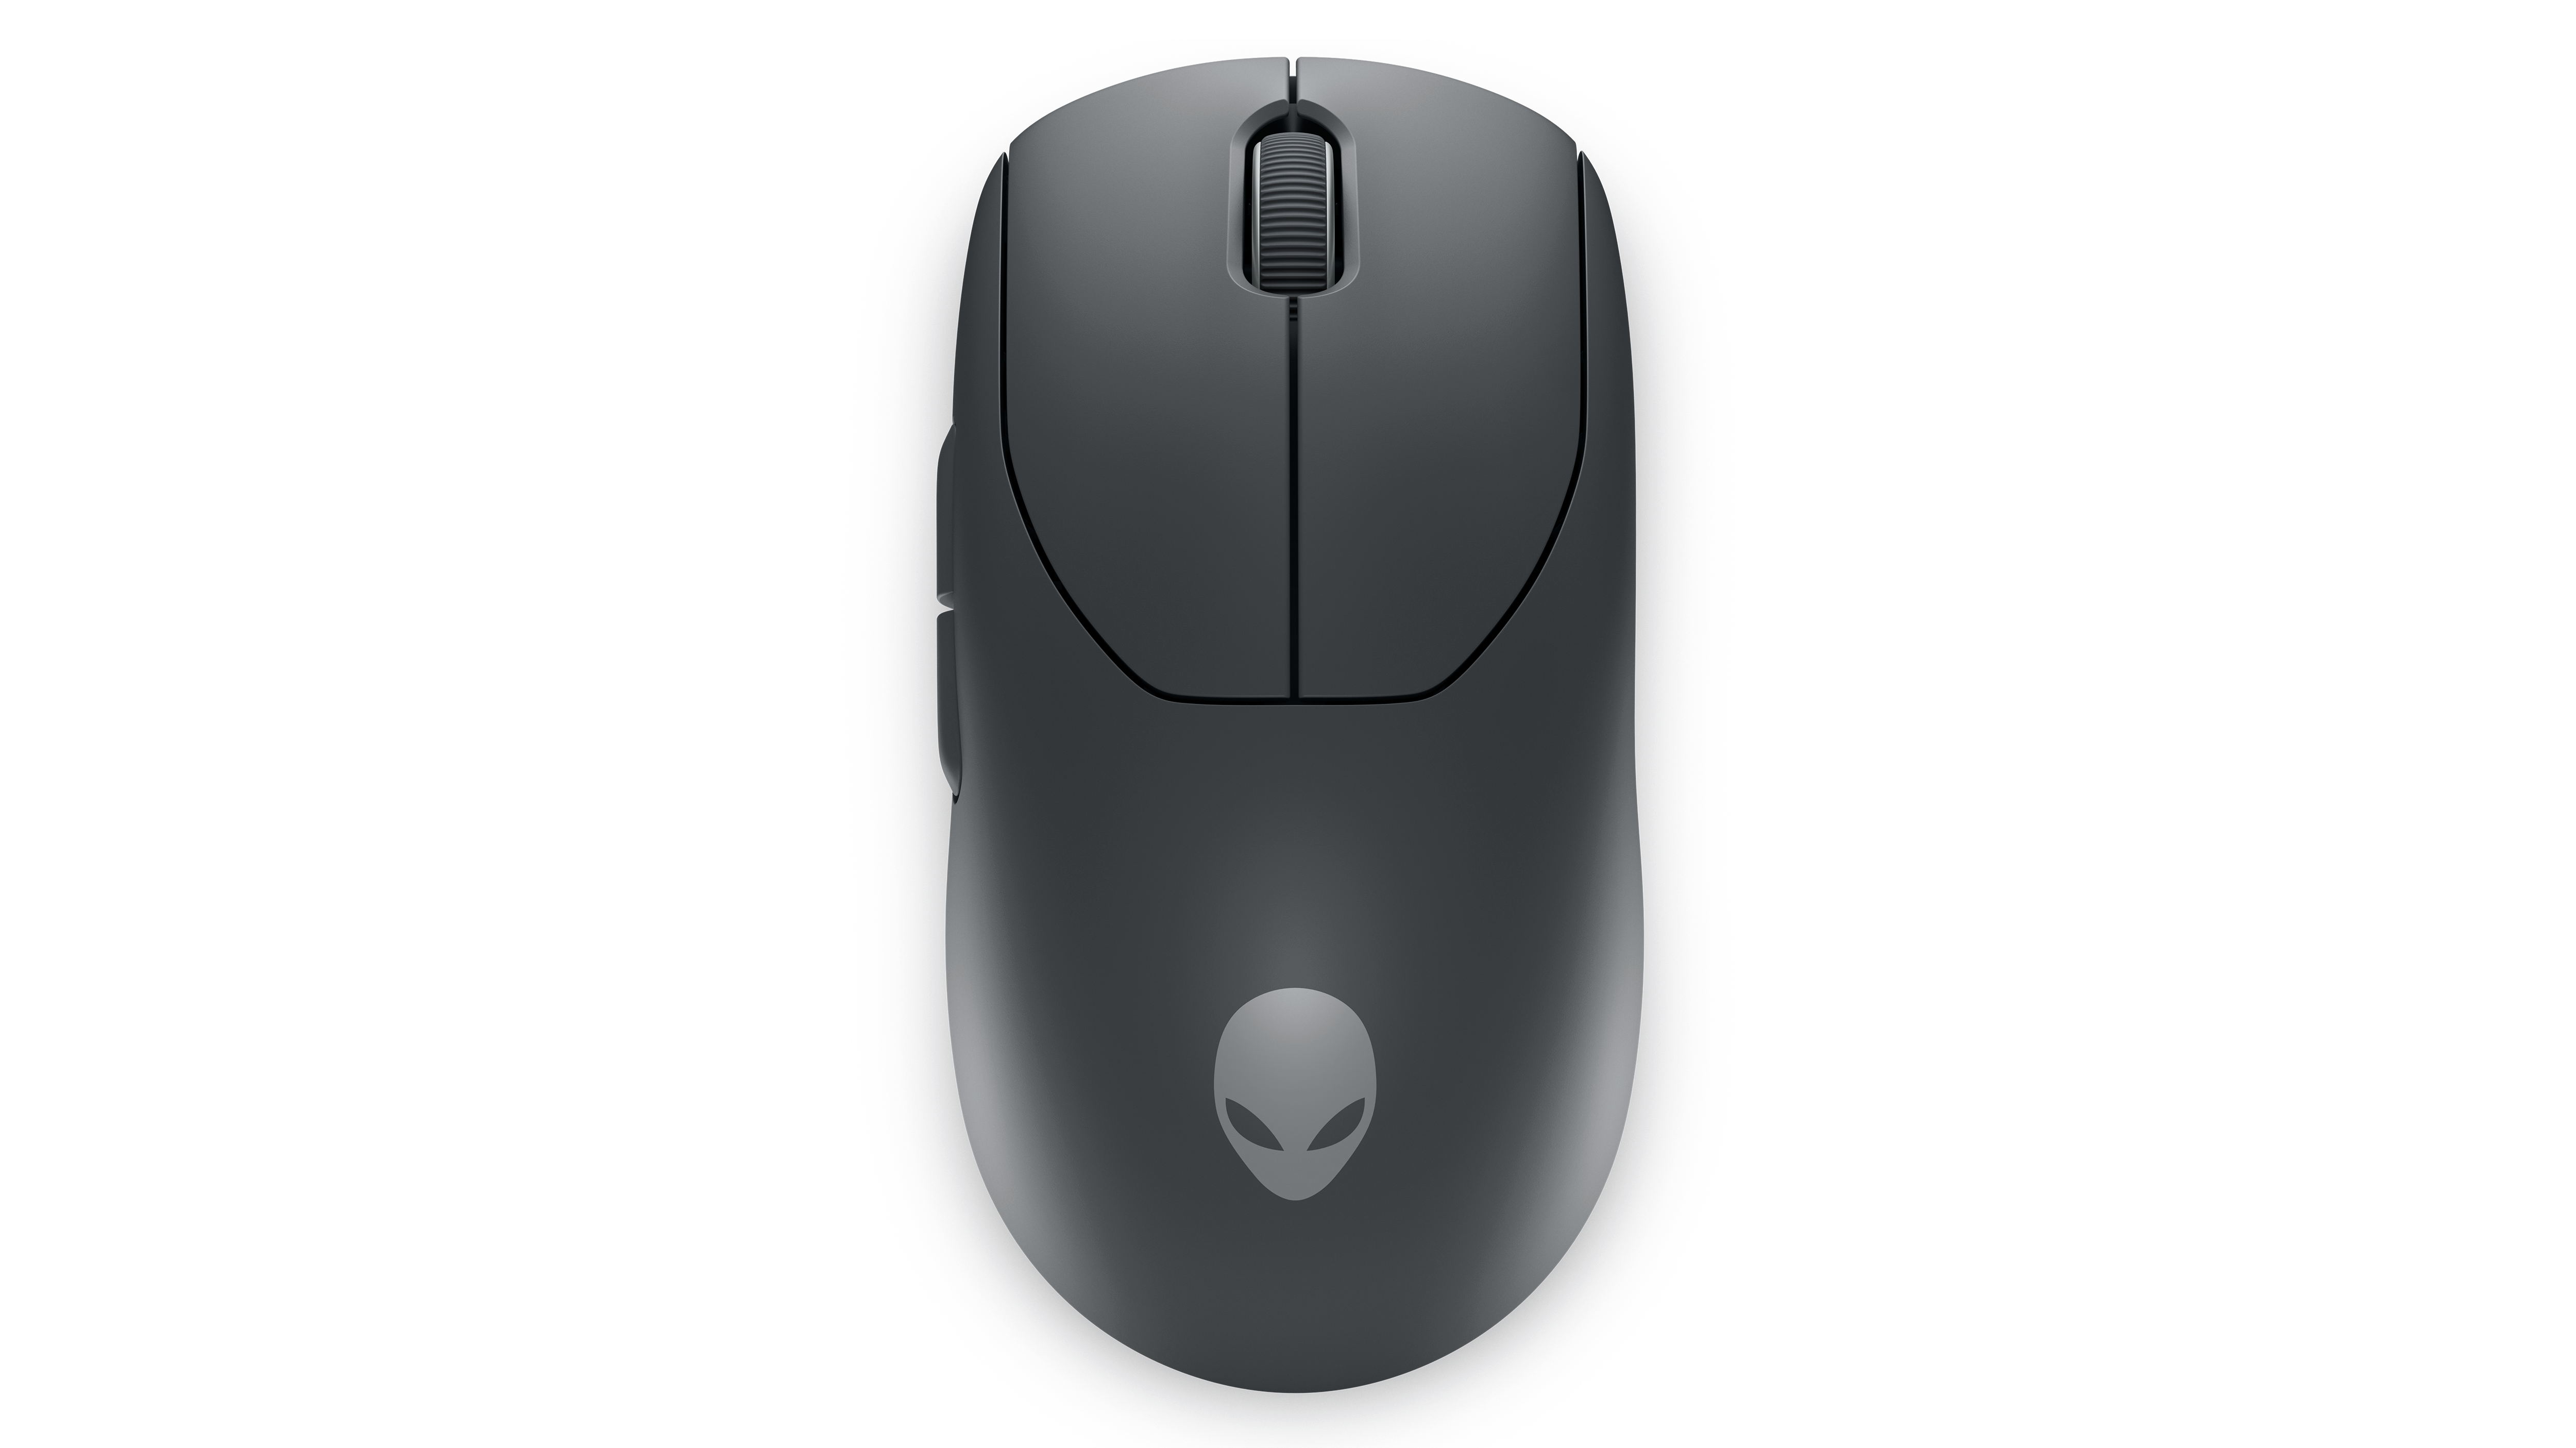 Bezprzewodowa mysz dla graczy Alienware Pro firmy Dell.